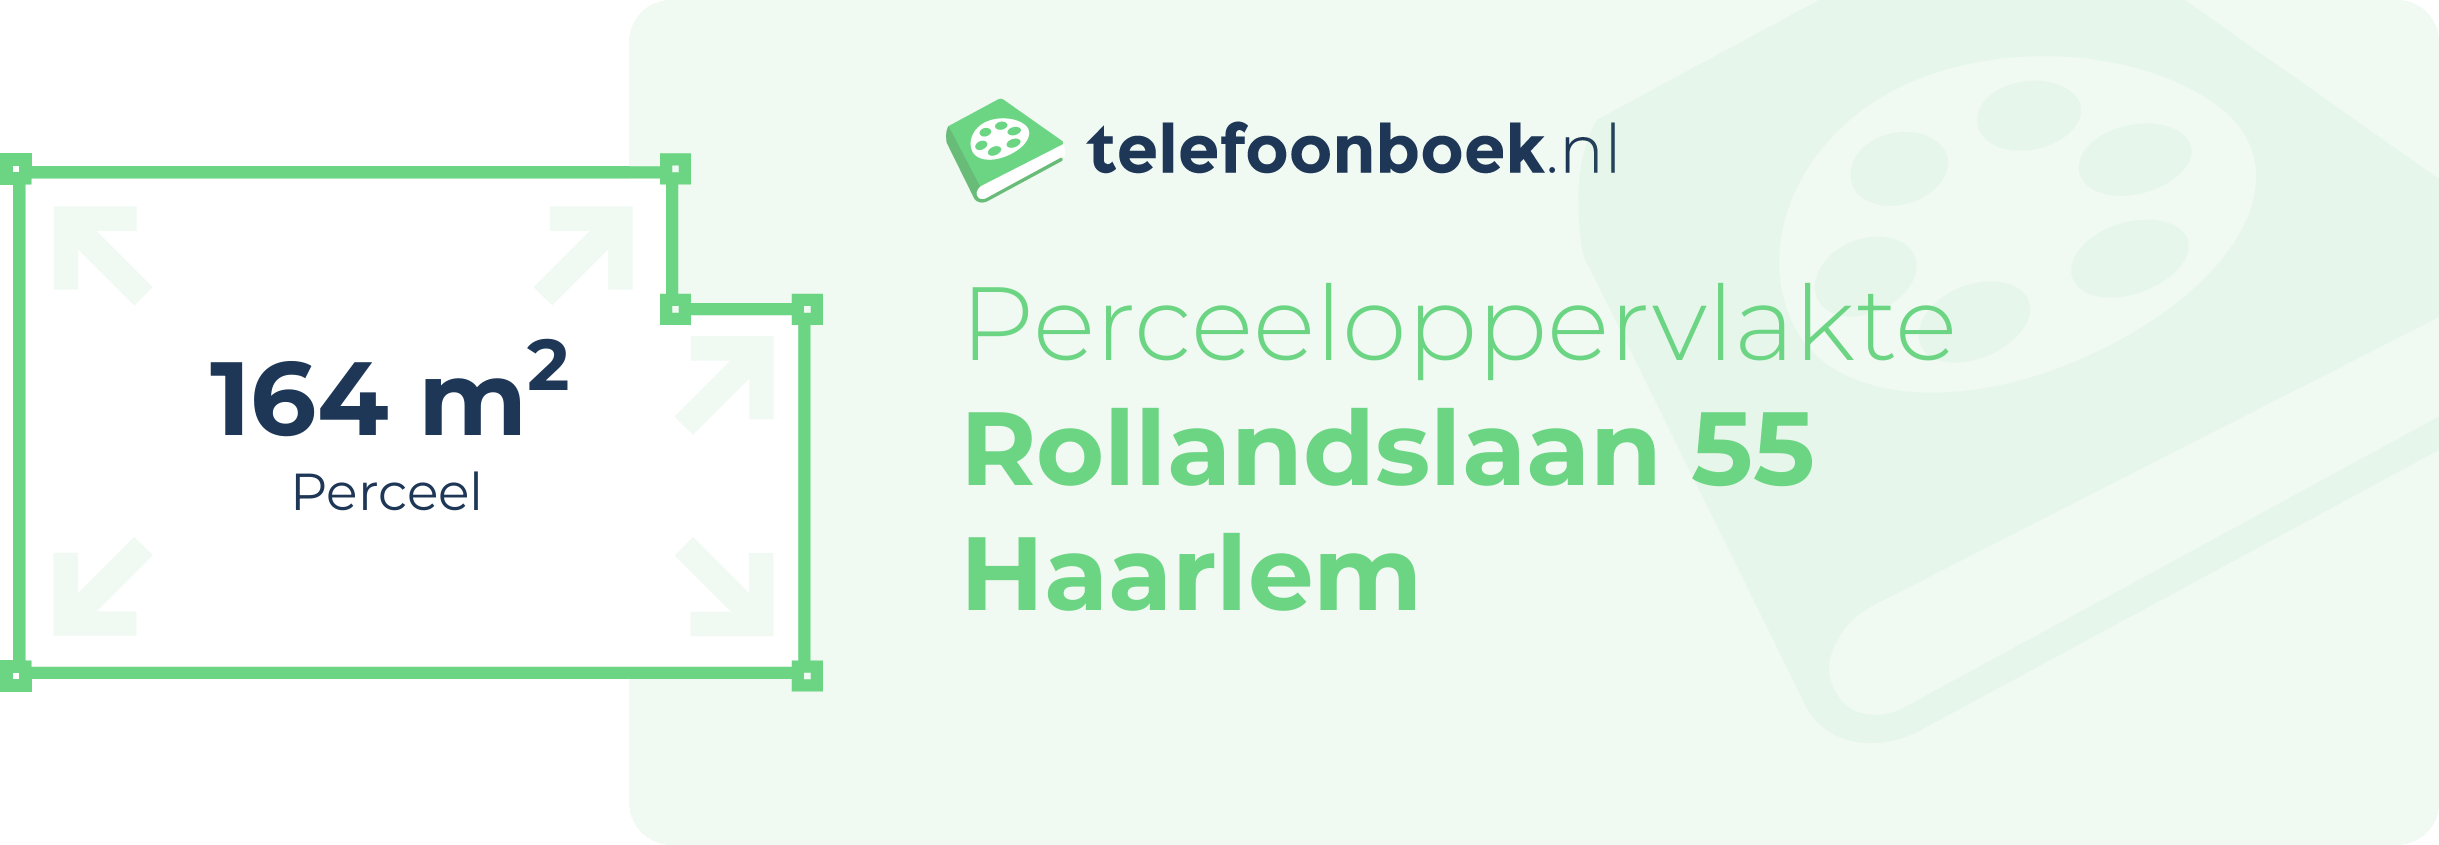 Perceeloppervlakte Rollandslaan 55 Haarlem